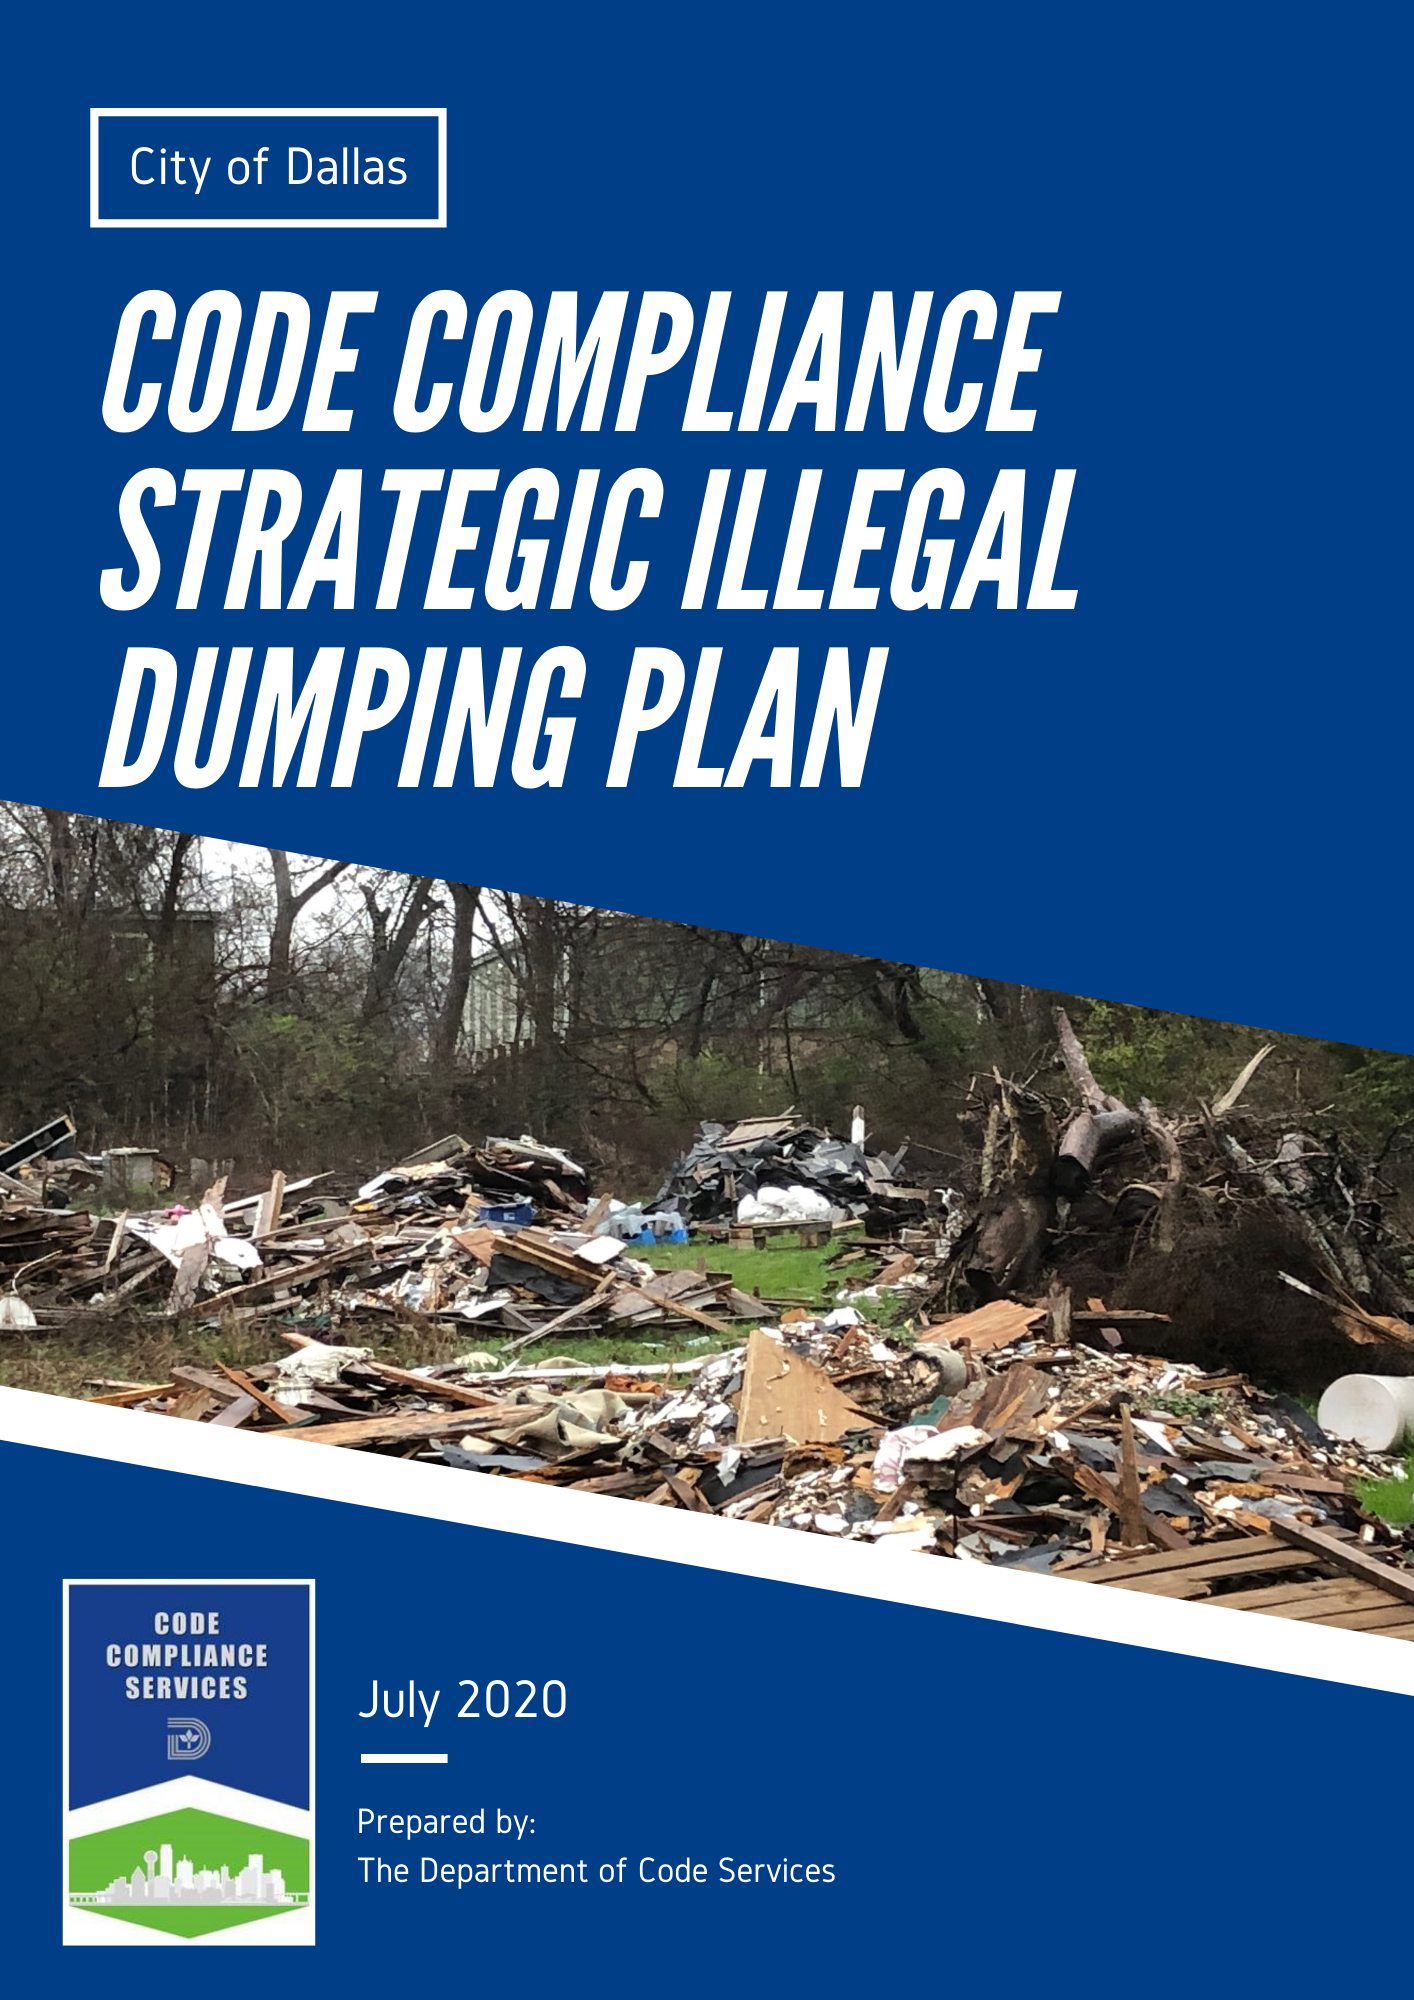 08_21_2020 Draft - Illegal Dumping Strategic Plan.png